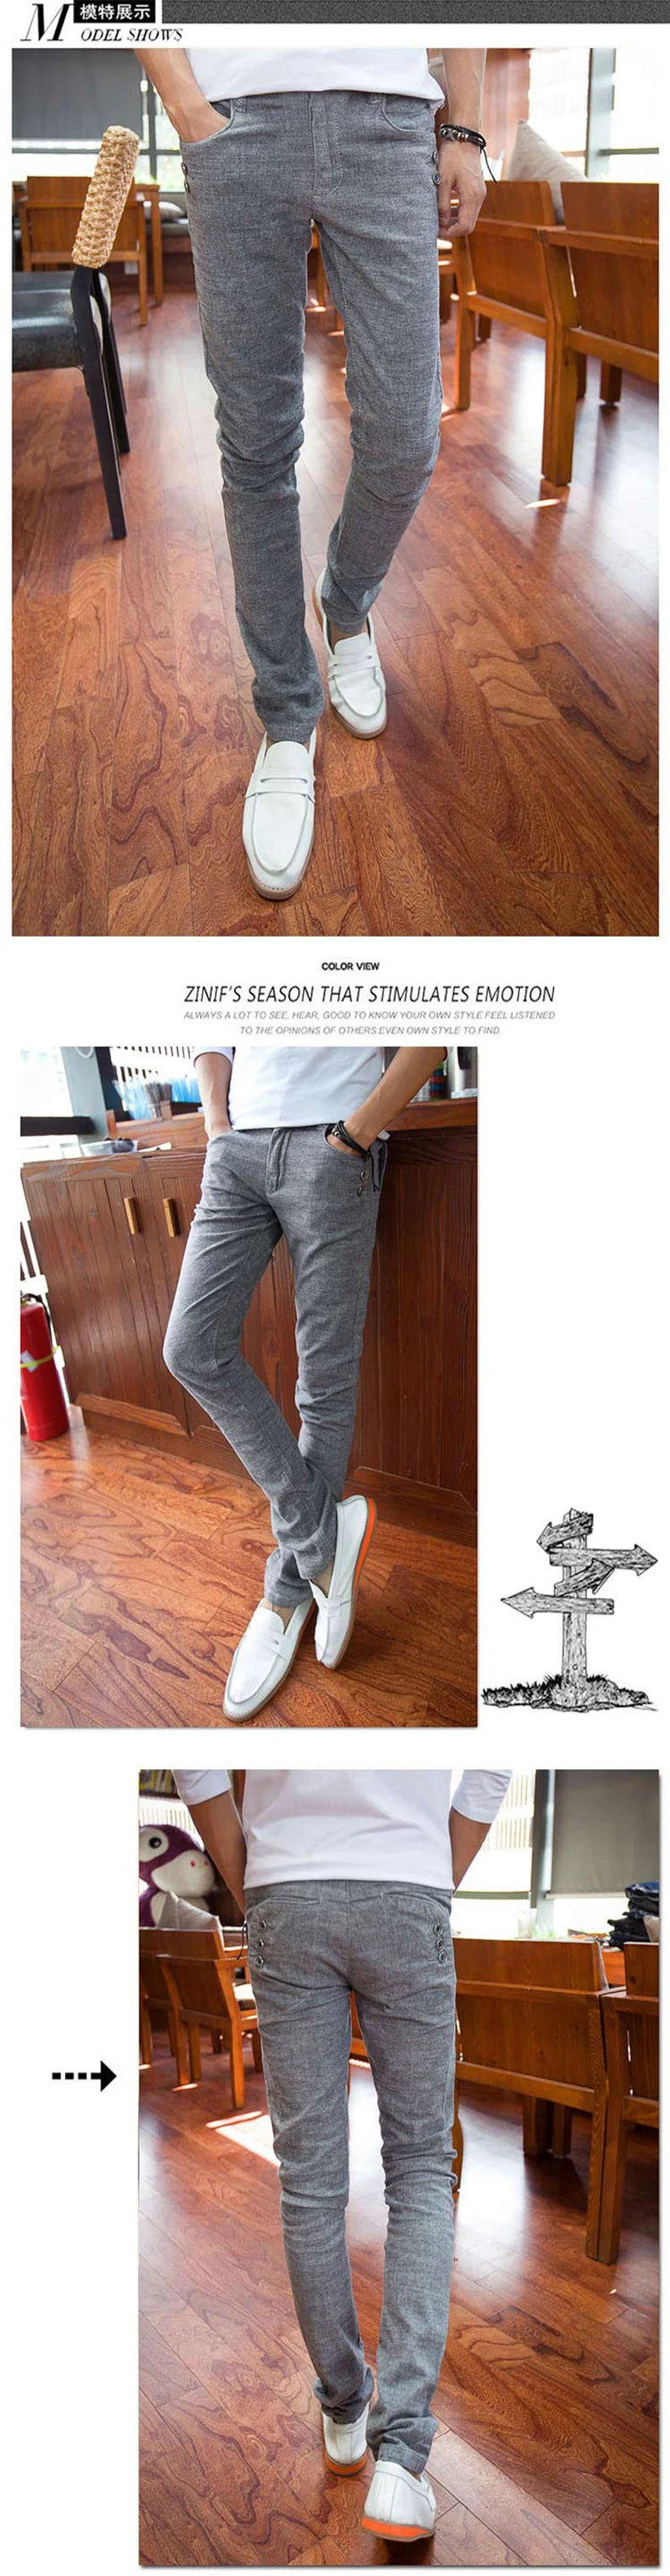 WERICHEST новый дизайн Повседневное Для мужчин Штаны хлопок тонкий брюки прямые брюки модные Бизнес насыщенный серый Штаны Для мужчин 28-36